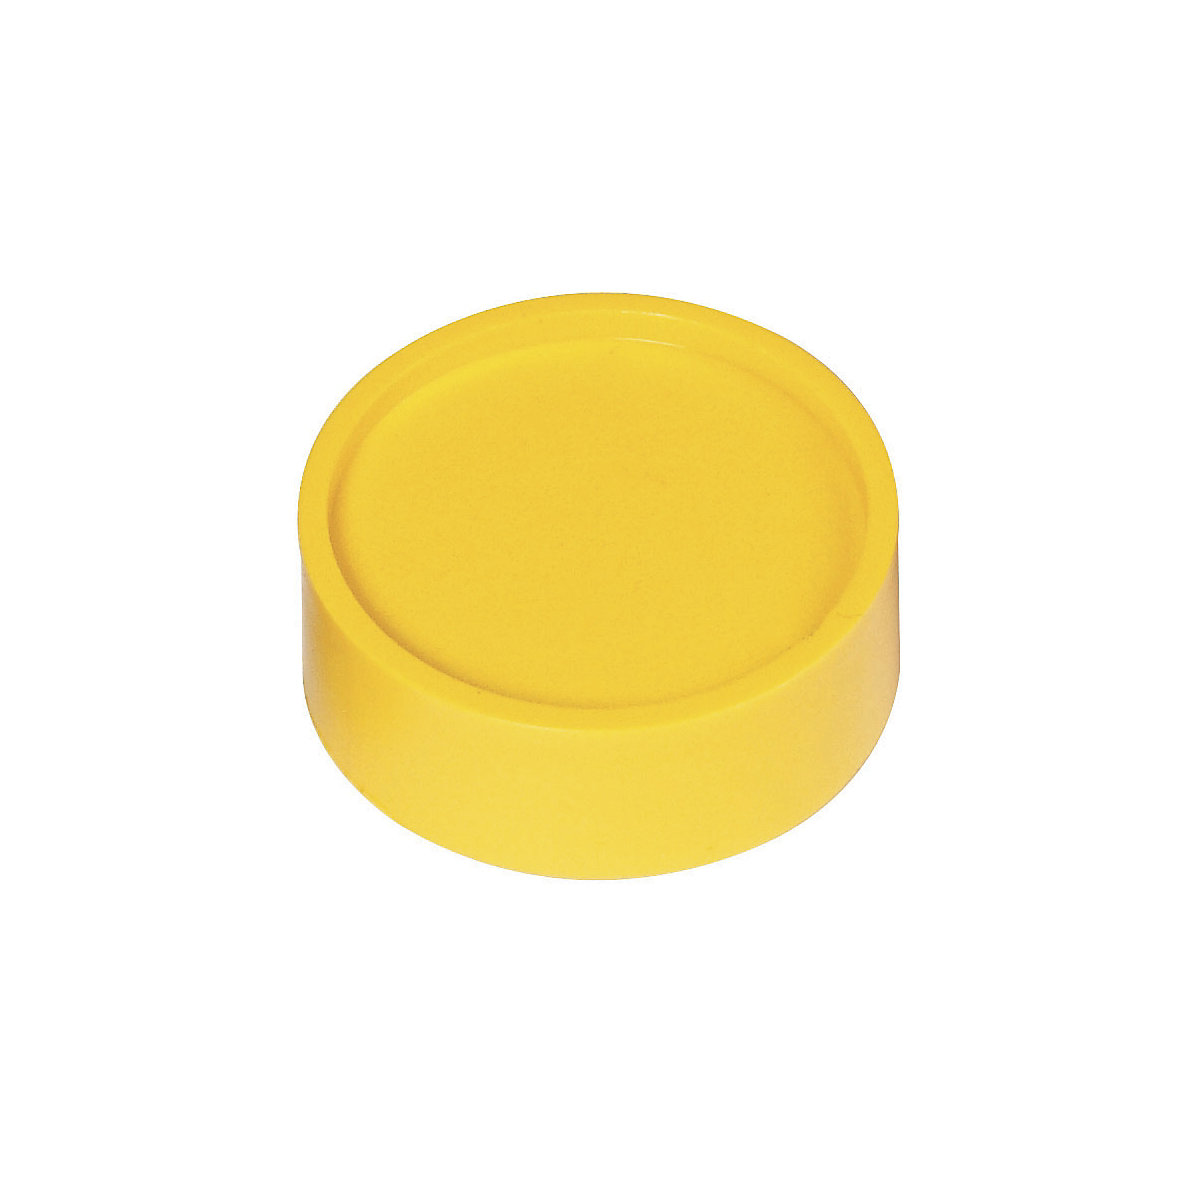 Calamite rotonde – MAUL, Ø 34 mm, conf. 50 pz., giallo-3